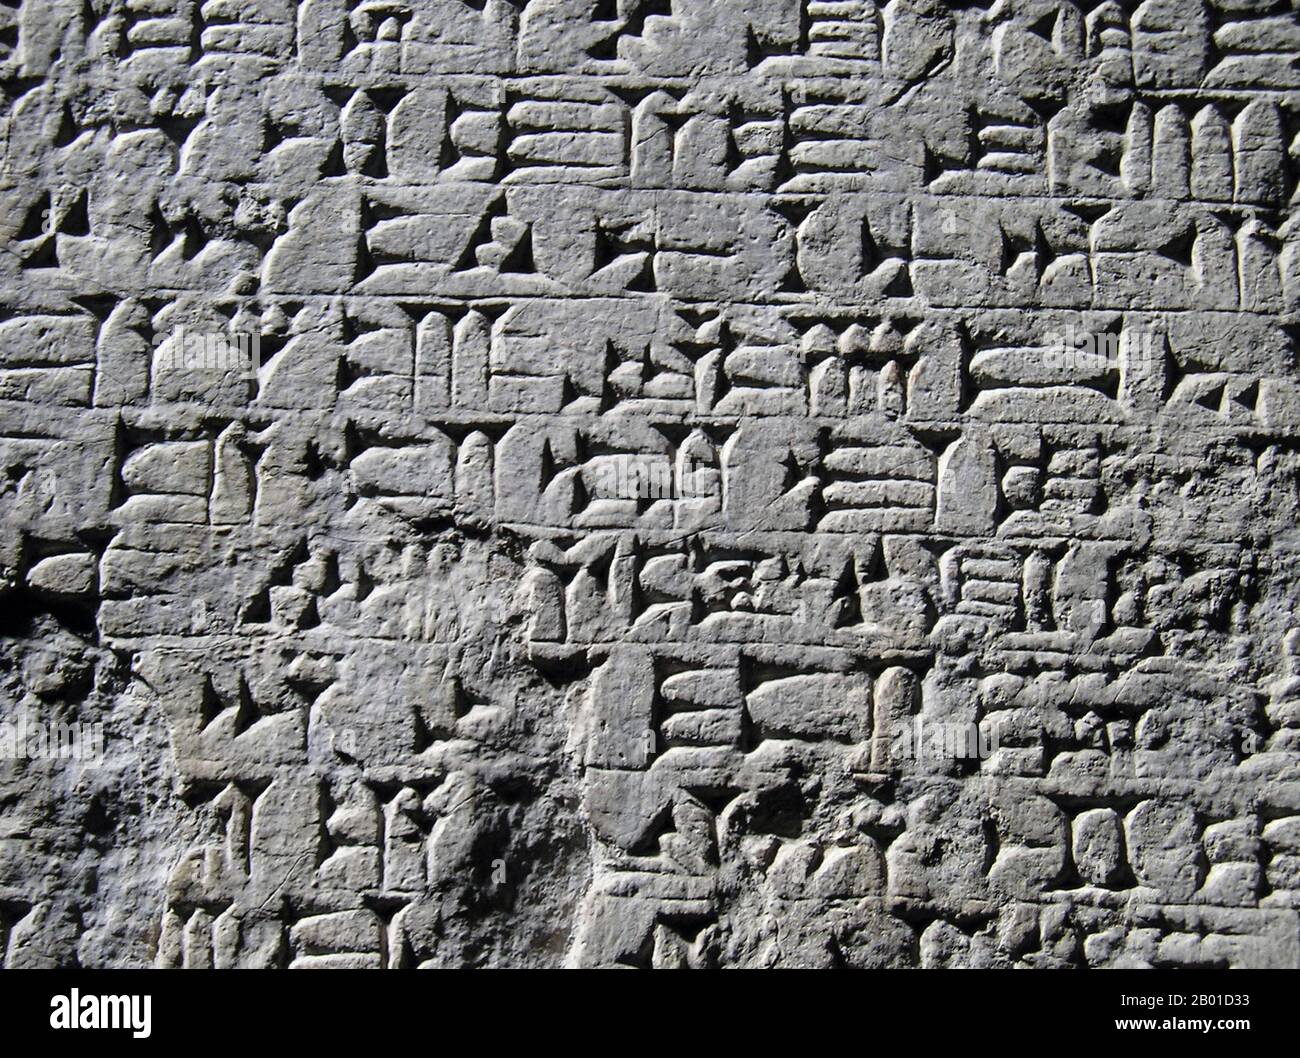 Irak: Detail der akkadischen Keilschrift, c. 2500 BCE. Die Keilschrift ist eine der frühesten bekannten Formen des schriftlichen Ausdrucks. In Sumer um das 30.. Jahrhundert v. Chr. auftauchend, mit Vorgängern, die bis ins späte 4.. Jahrtausend (die Uruk IV Periode) reichen, begann Keilschrift als ein System von Piktografen. In den drei Jahrtausenden wurde die Schrift überspannt, die Bilddarstellungen wurden vereinfacht und abstrakter, da auch die Anzahl der verwendeten Charaktere allmählich kleiner wurde, von etwa 1.000 einzigartigen Charakteren in der frühen Bronzezeit auf etwa 400 einzigartige Charaktere in der späten Bronzezeit. Stockfoto